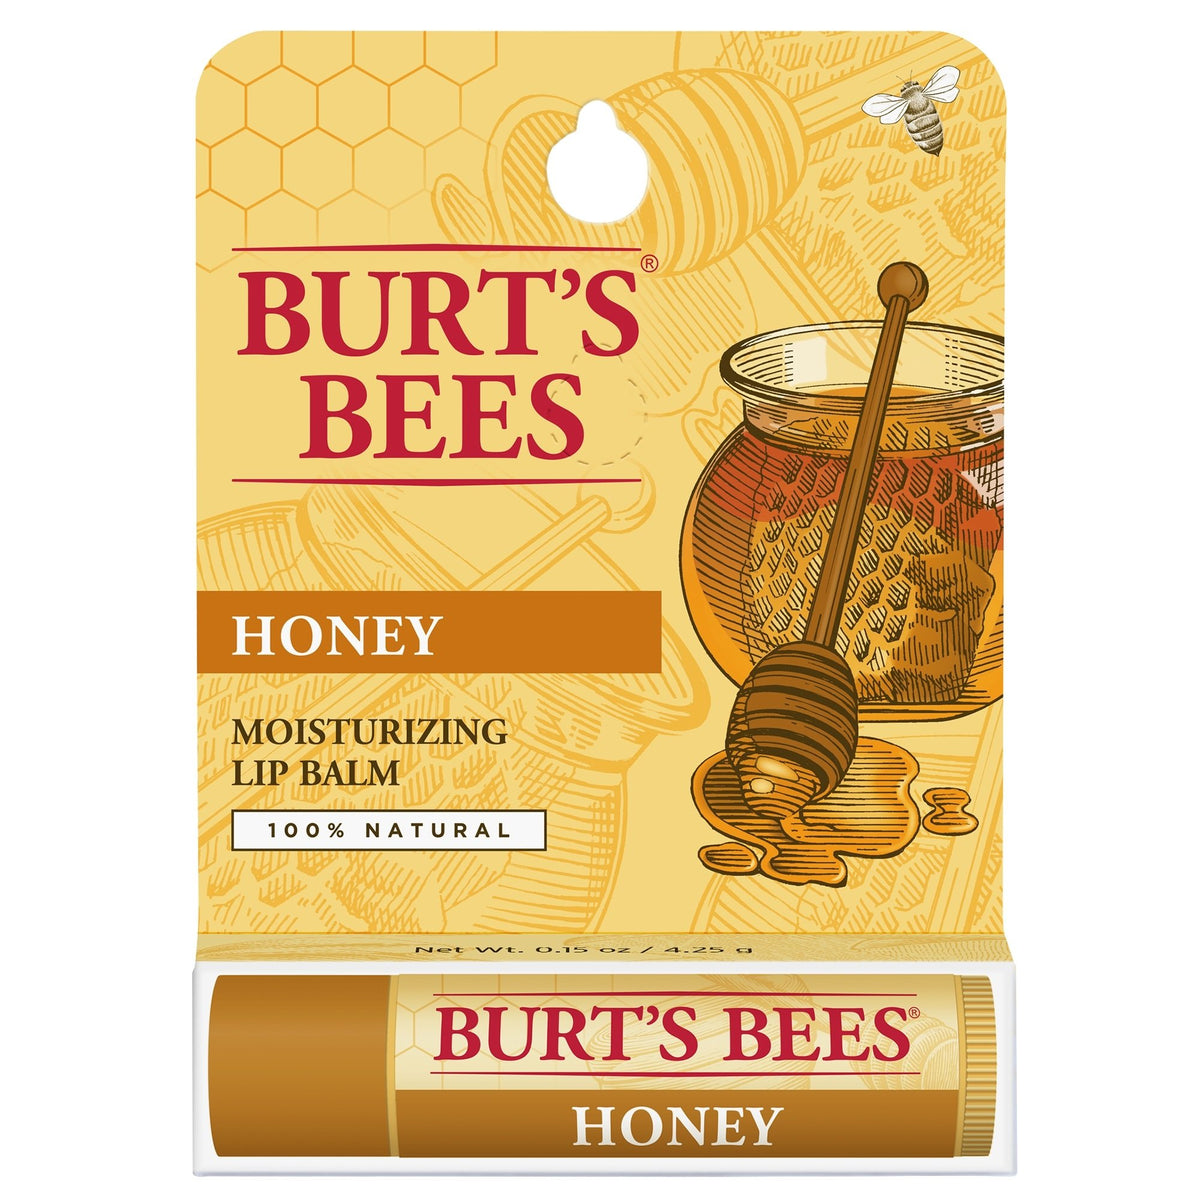 BURT'S BEES Lip Balm - Honey